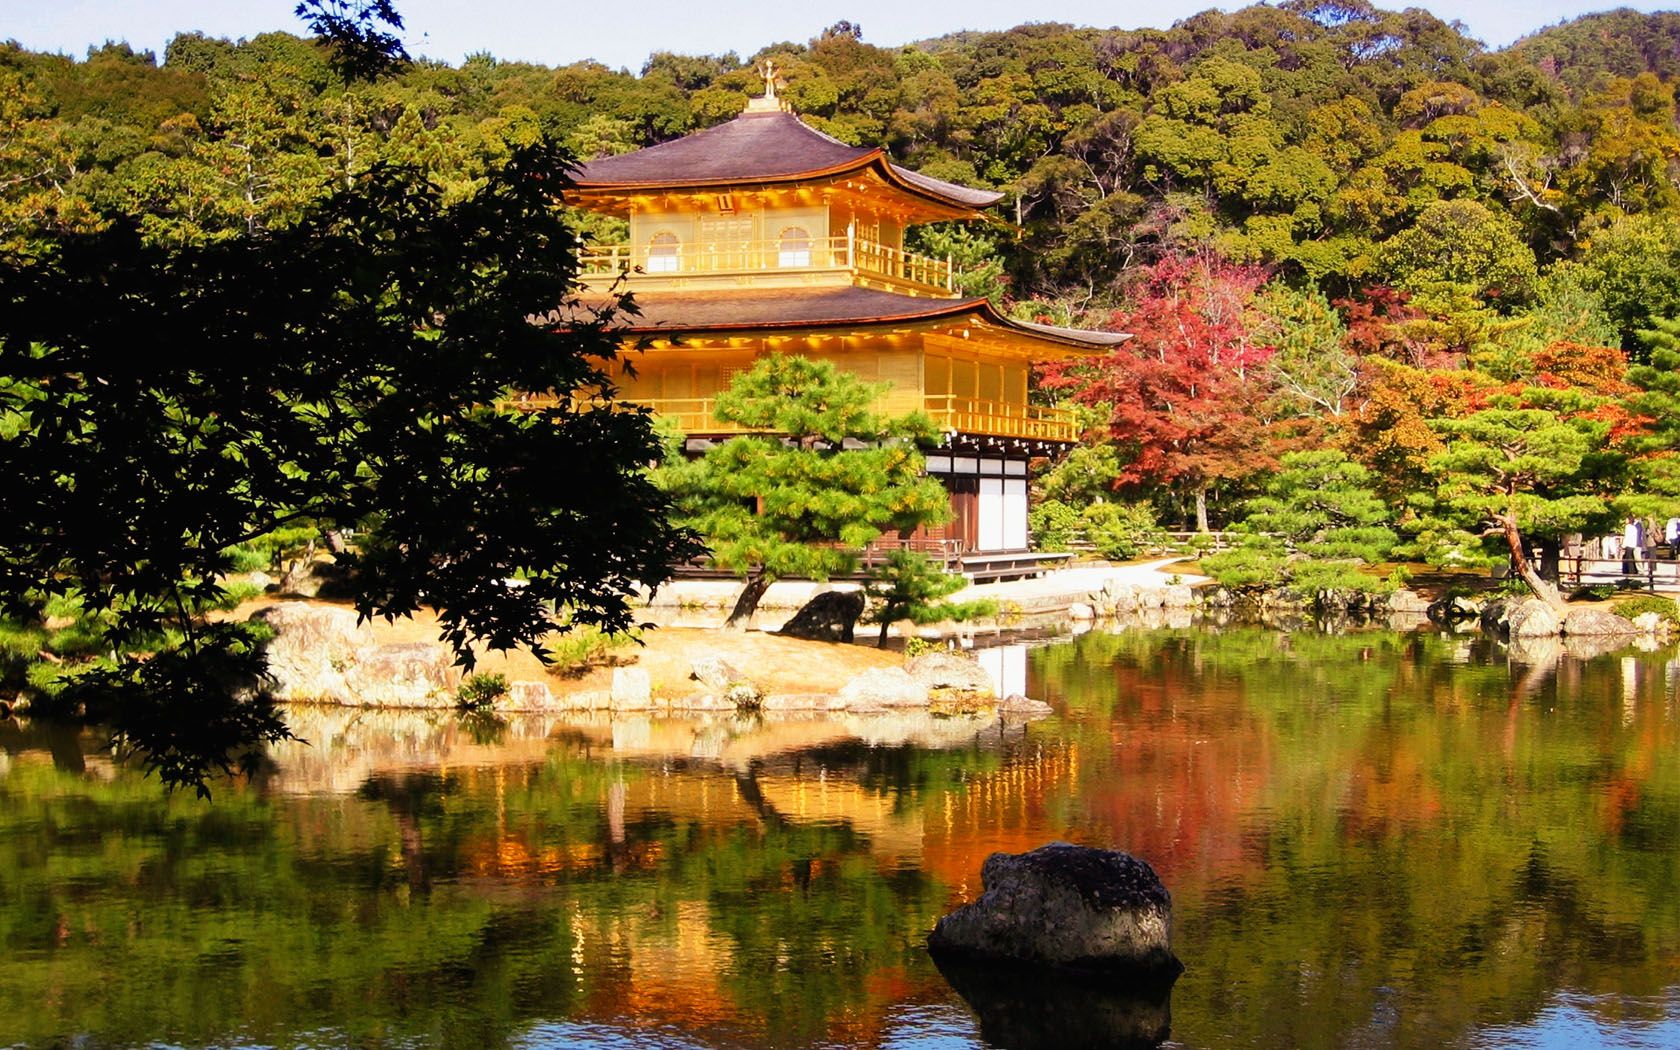 Chiêm ngưỡng ngôi chùa được dát bằng vàng ở Nhật Bản